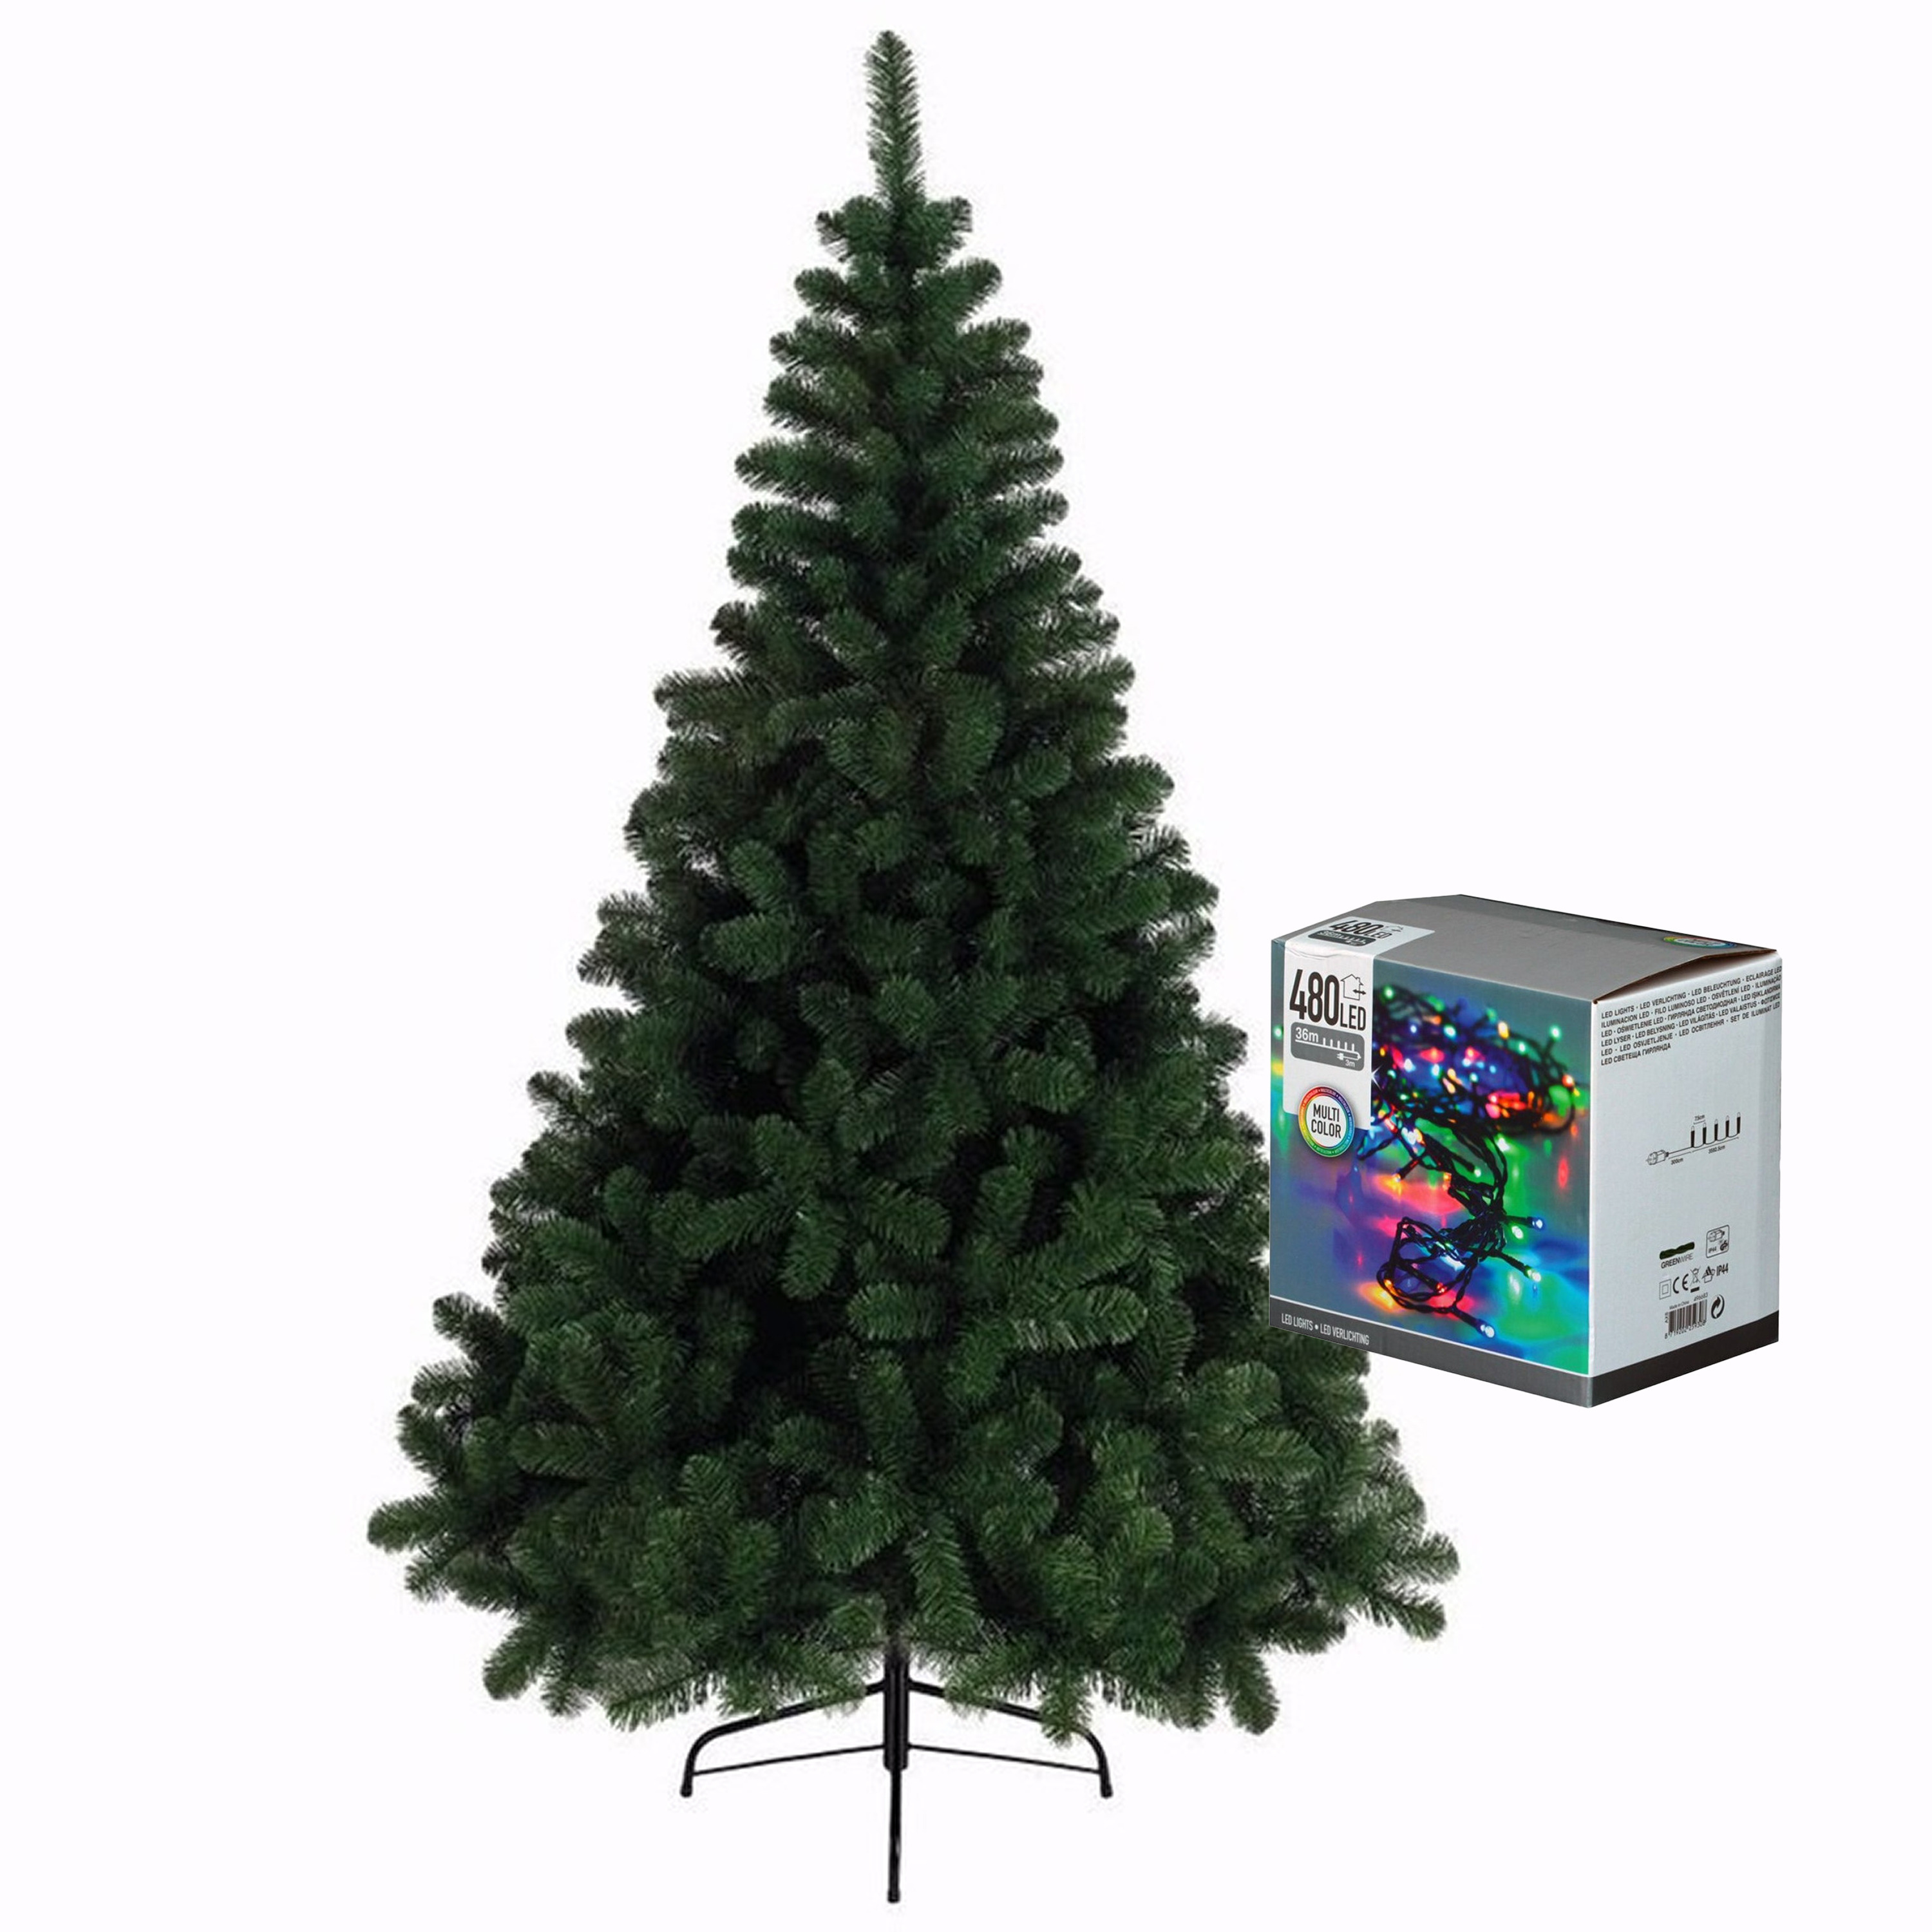 Kerstboom 240 cm incl. kerstverlichting lichtsnoer gekleurd